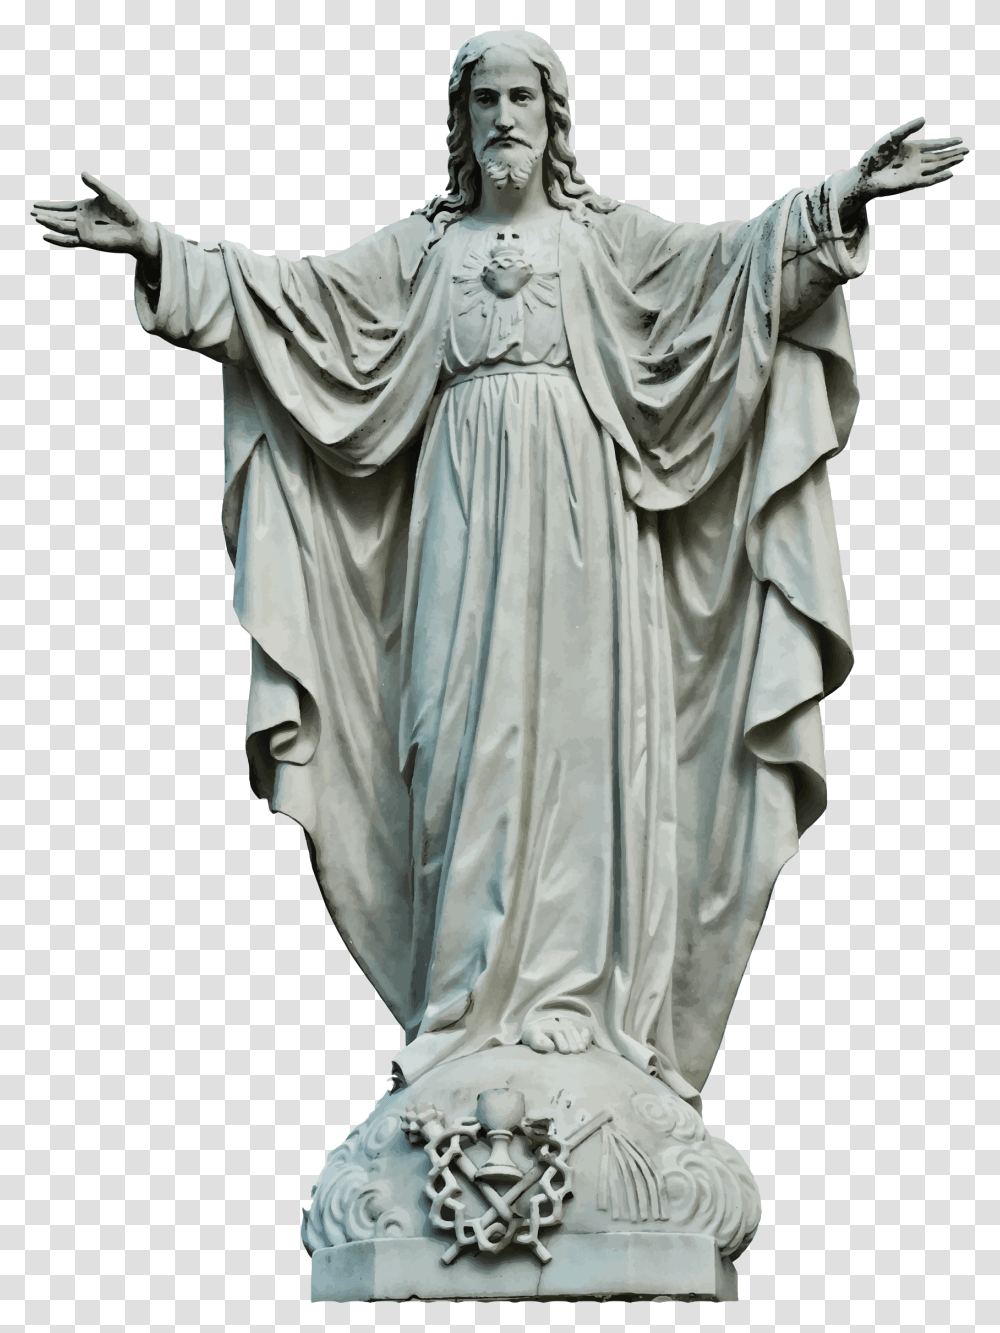 Jesus Clipart Stone Jesus Christ Statue, Sculpture, Person, Human, Figurine Transparent Png